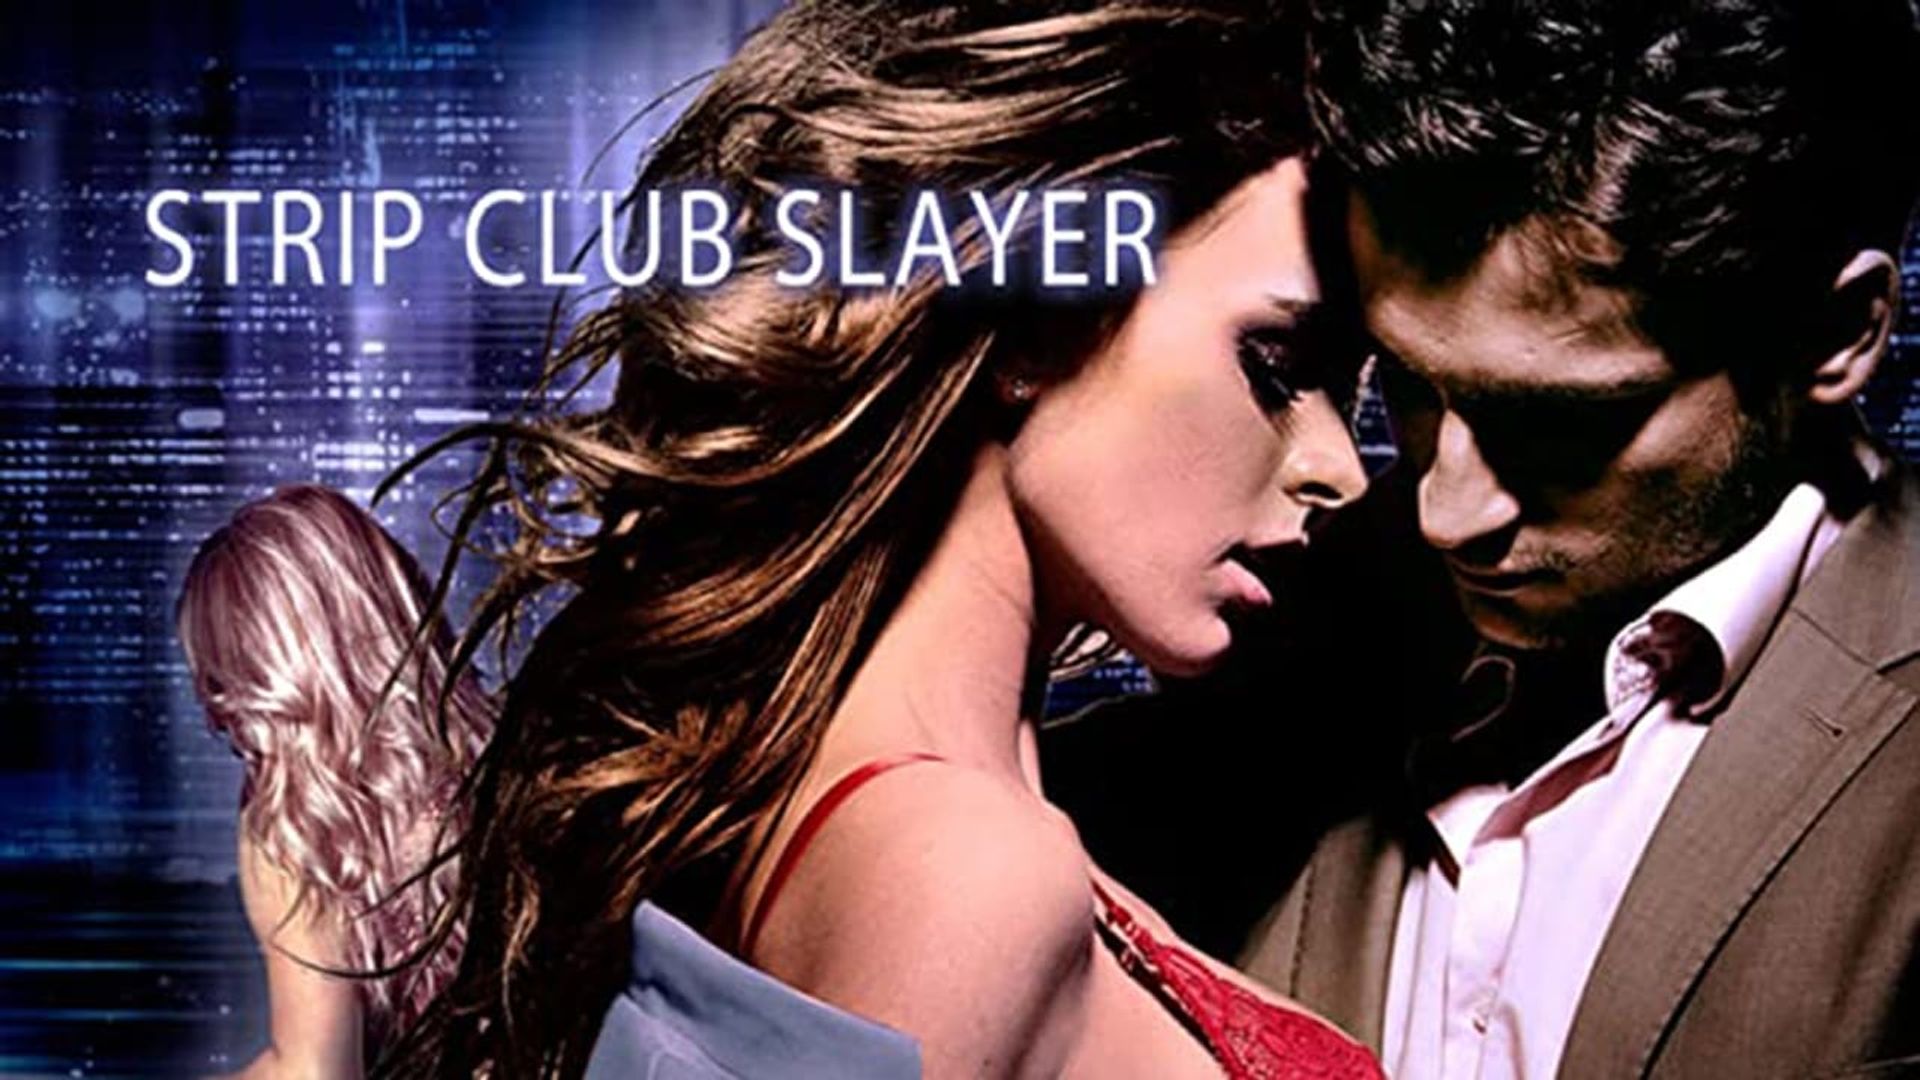 Strip Club Slayer background